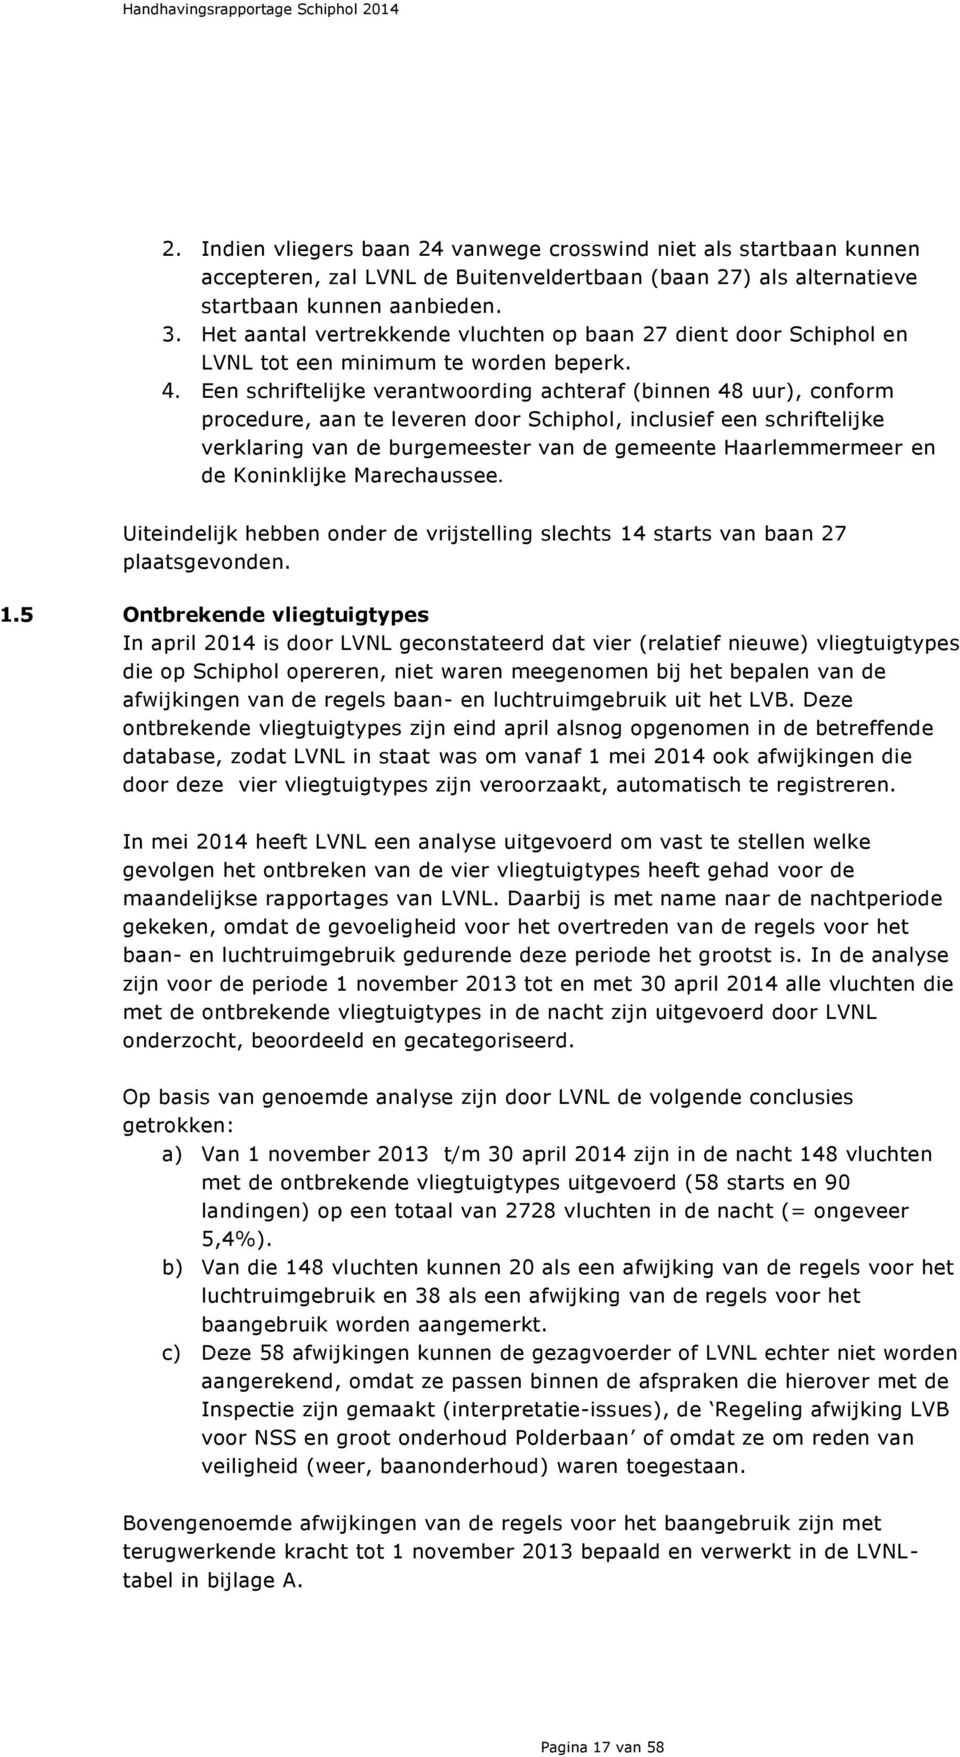 Een schriftelijke verantwoording achteraf (binnen 48 uur), conform procedure, aan te leveren door Schiphol, inclusief een schriftelijke verklaring van de burgemeester van de gemeente Haarlemmermeer